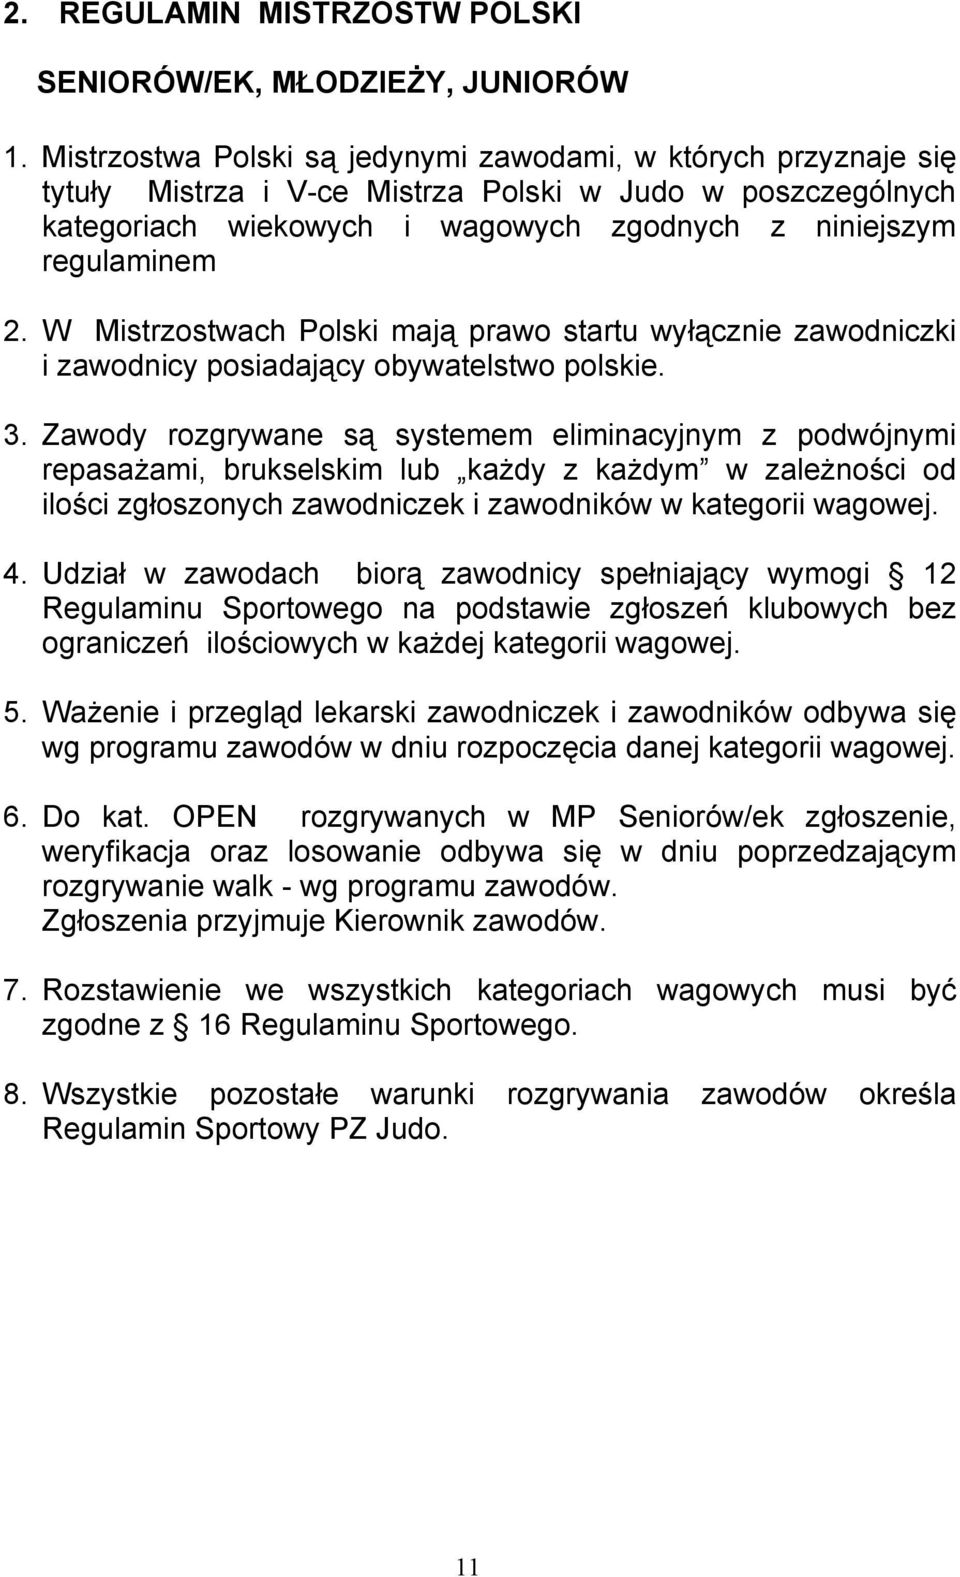 W Mistrzostwach Polski mają prawo startu wyłącznie zawodniczki i zawodnicy posiadający obywatelstwo polskie. 3.